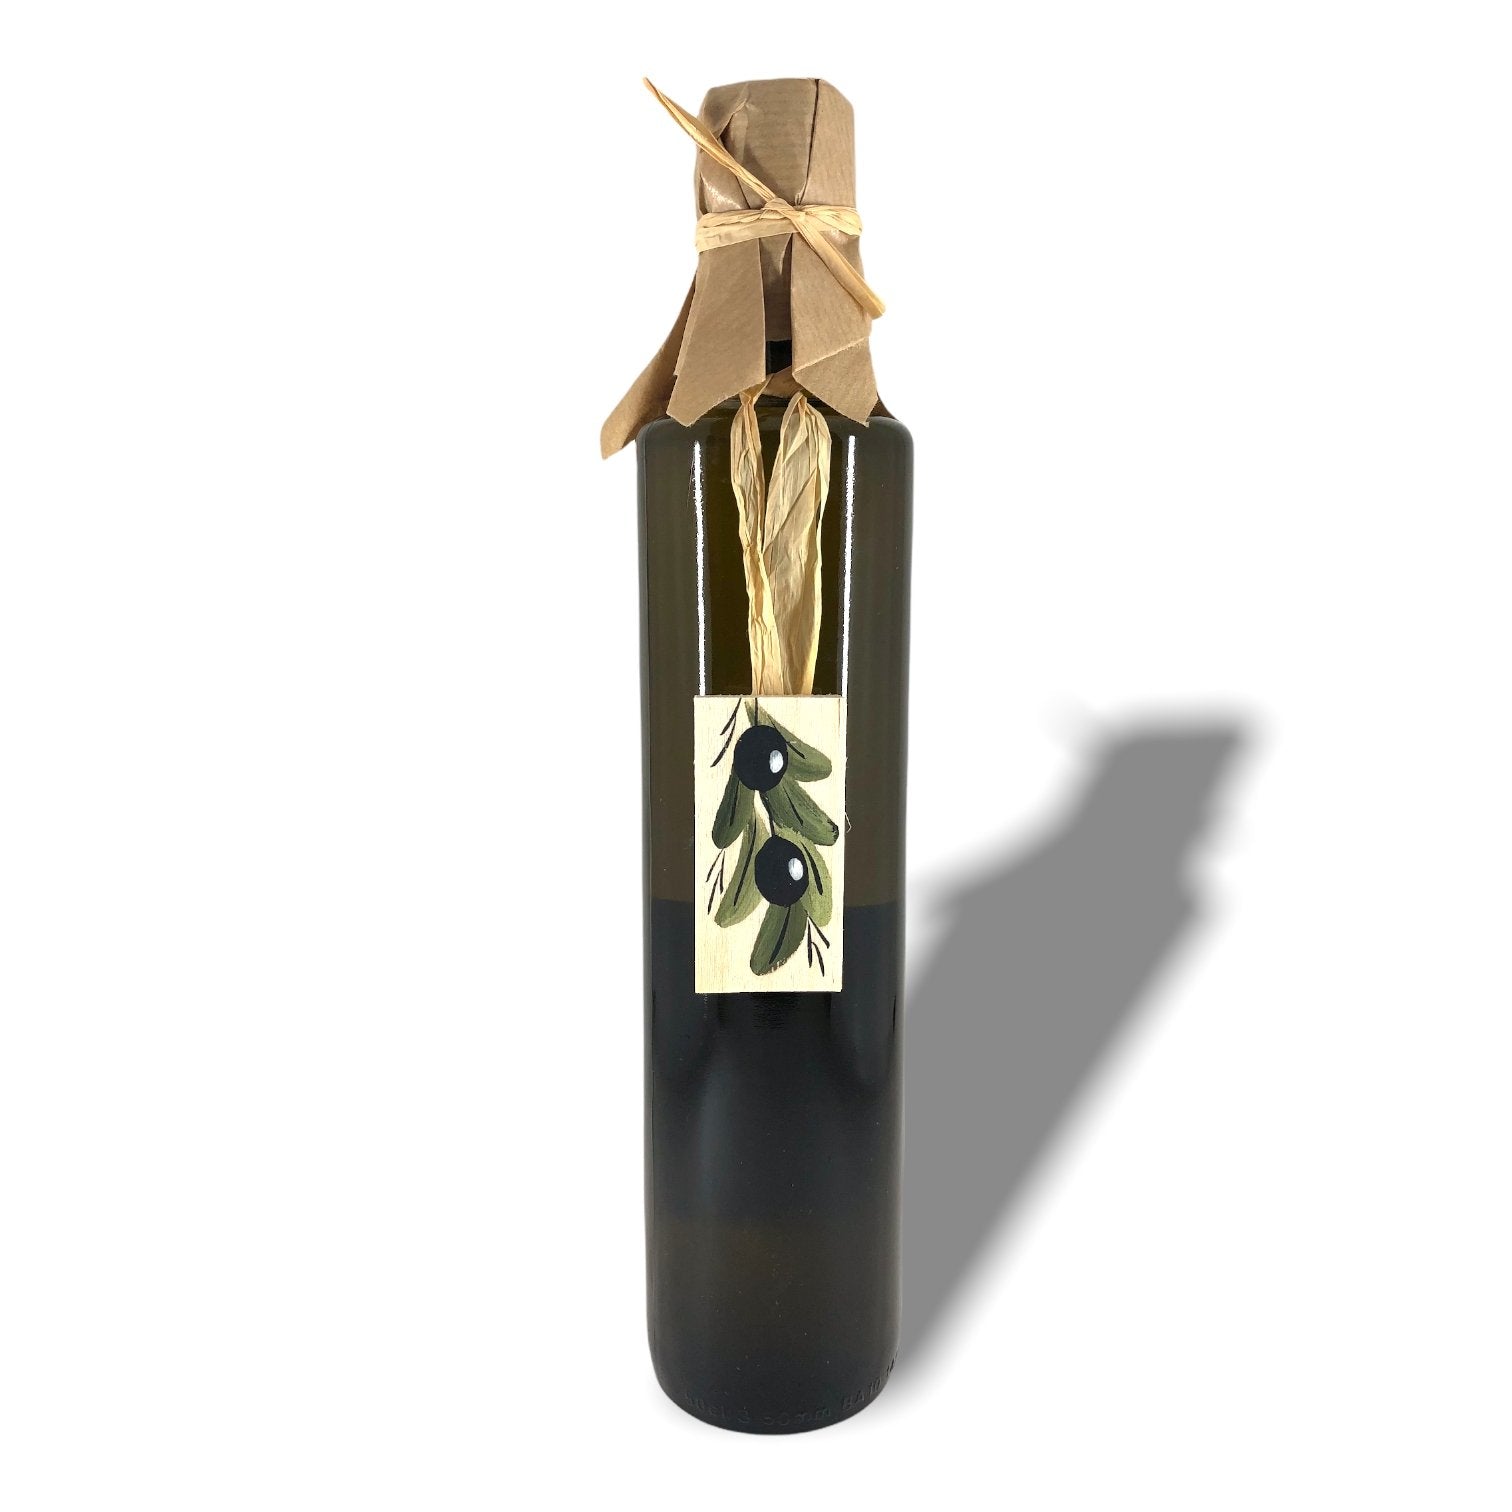 Griechisches Olivenöl nativ extra - 500ml Geschenkflasche mit Holztafel - OlivenZauber - Olivenöl neu erleben